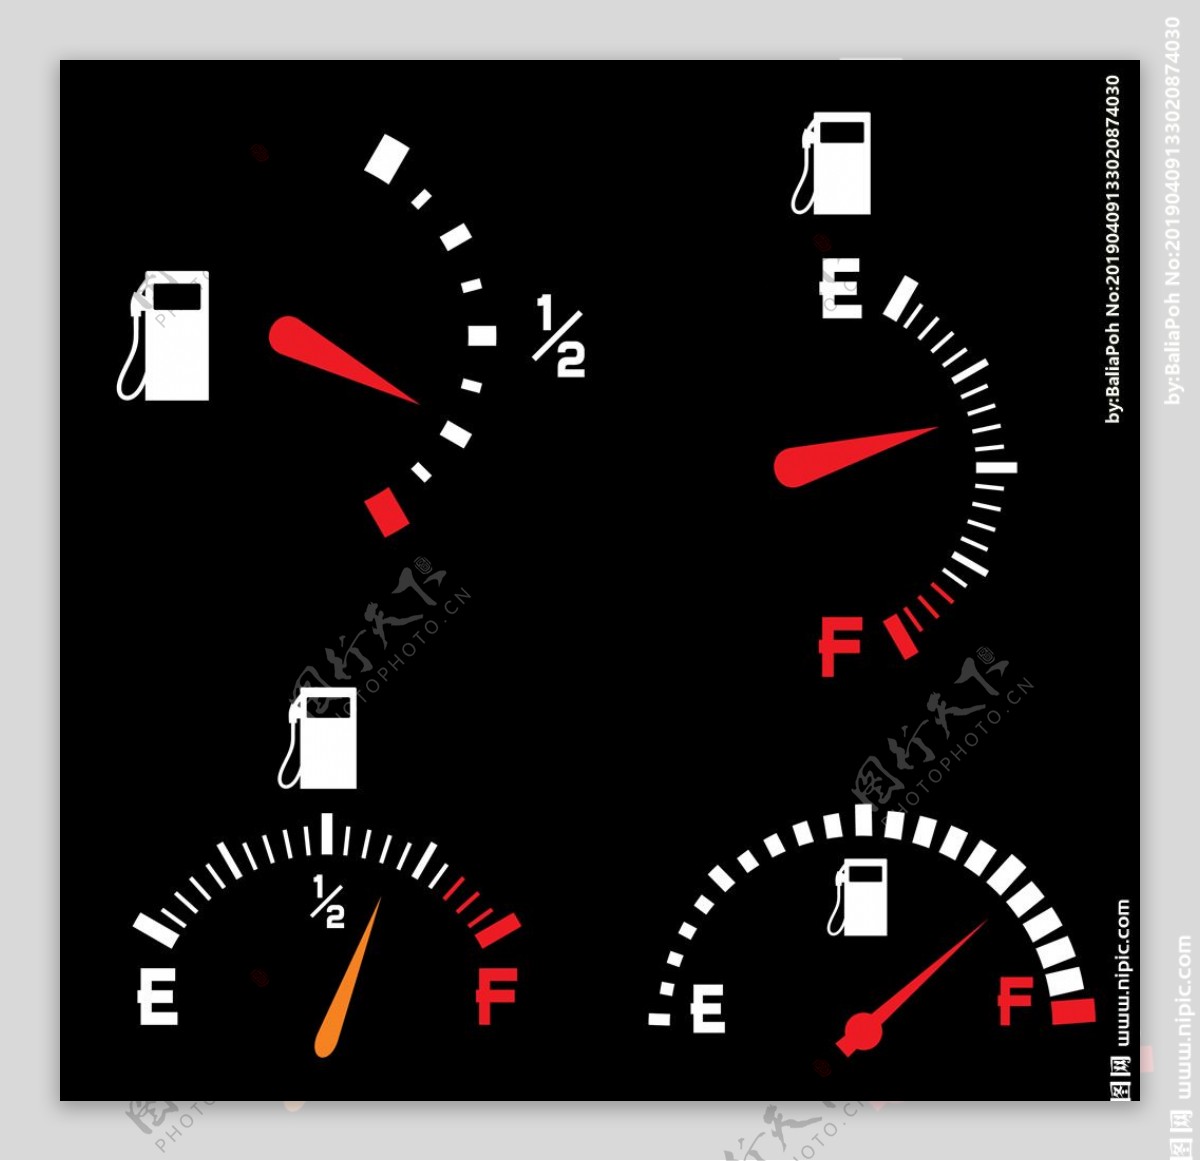 汽车燃油油位矢量